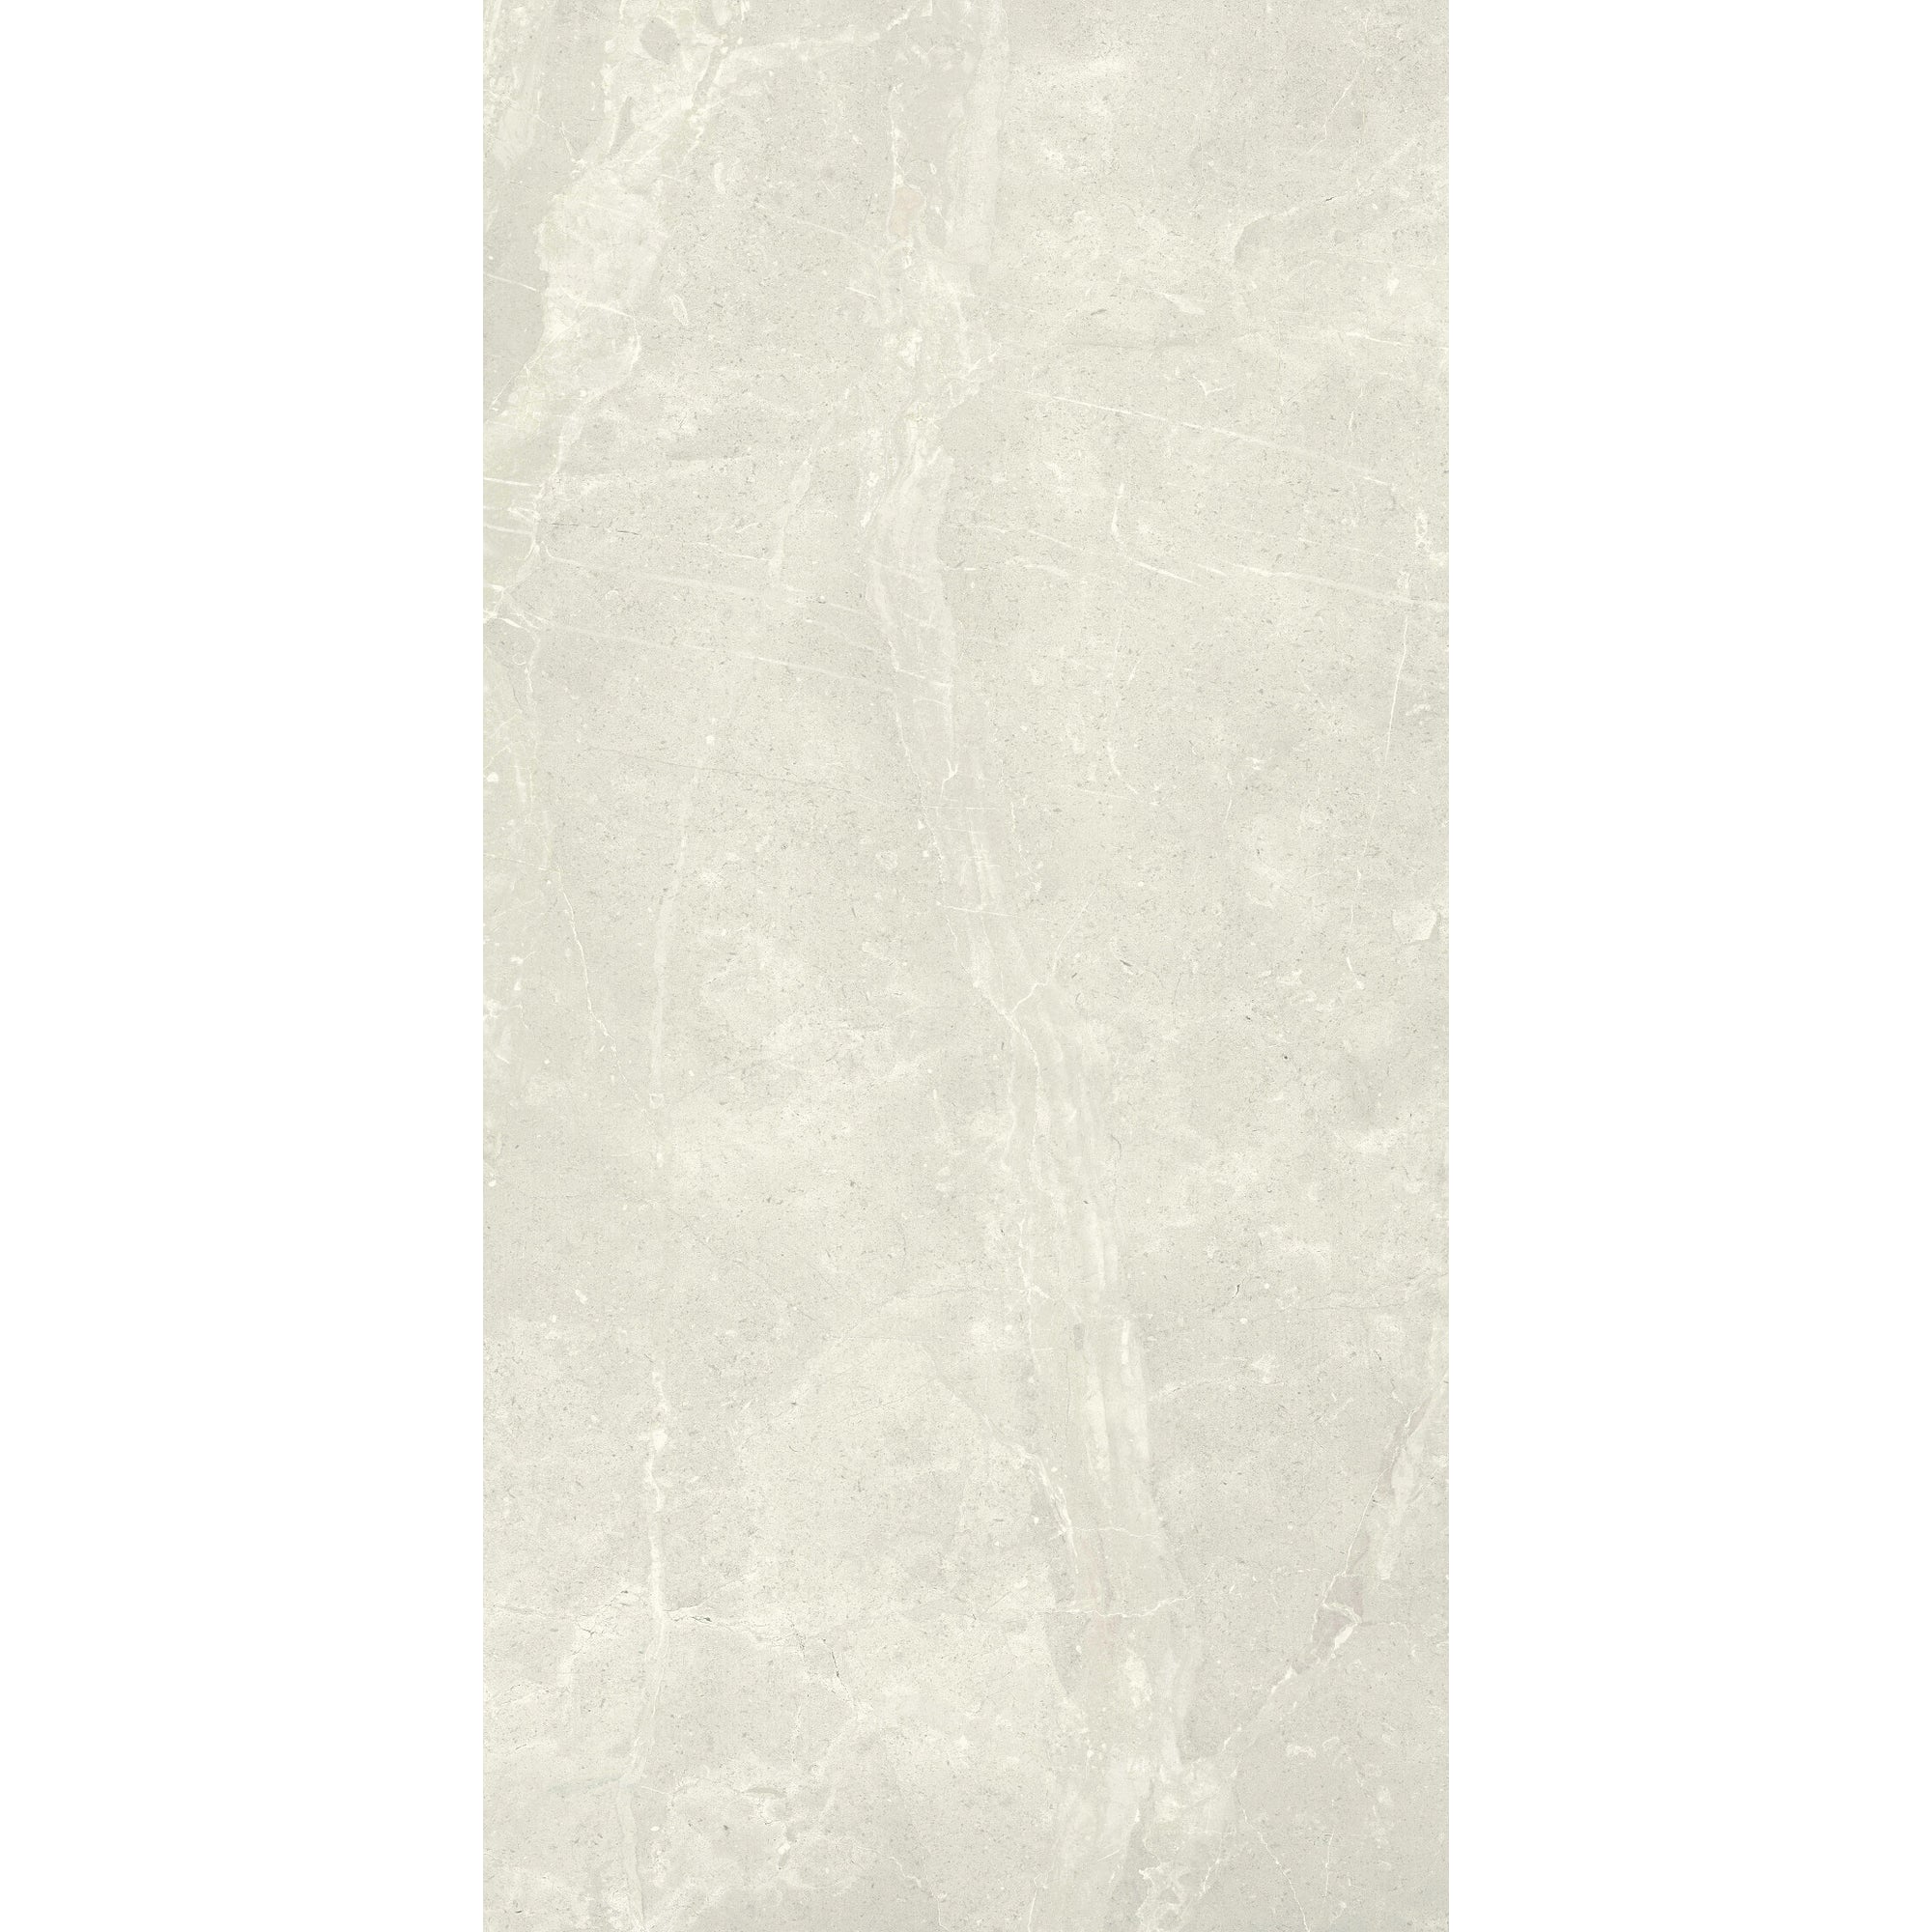 Arizona Tile - Anthea 24" x 48" Rectified Porcelain Tile - White